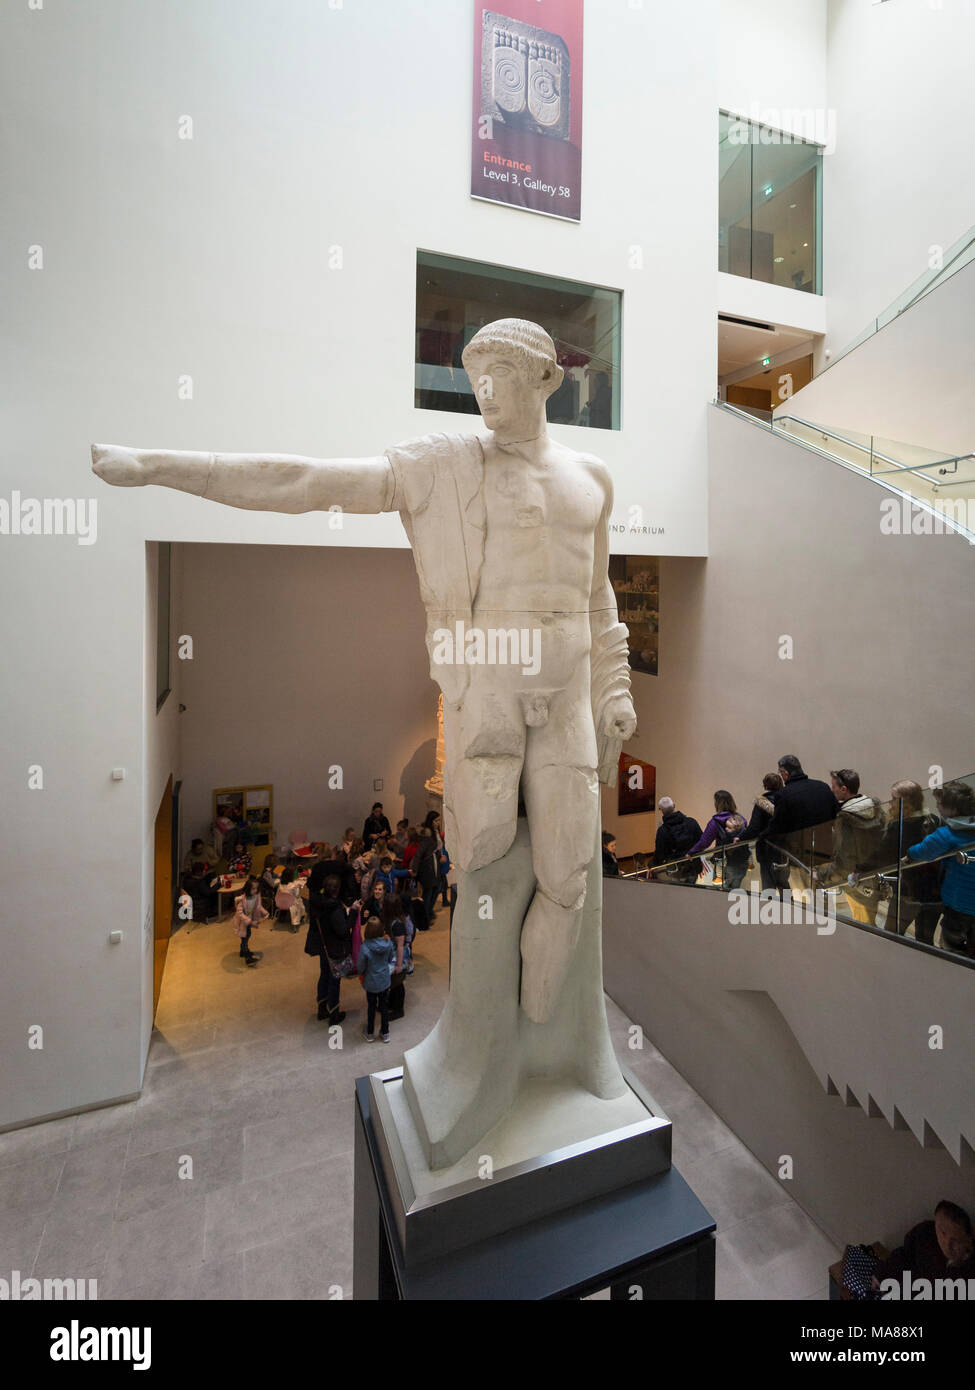 Oxford. England. The Ashmolean Museum, interior atrium. Statue of Apollo (foreground) in the Zvi and Ofra Meitar Family Fund Atrium. Stock Photo